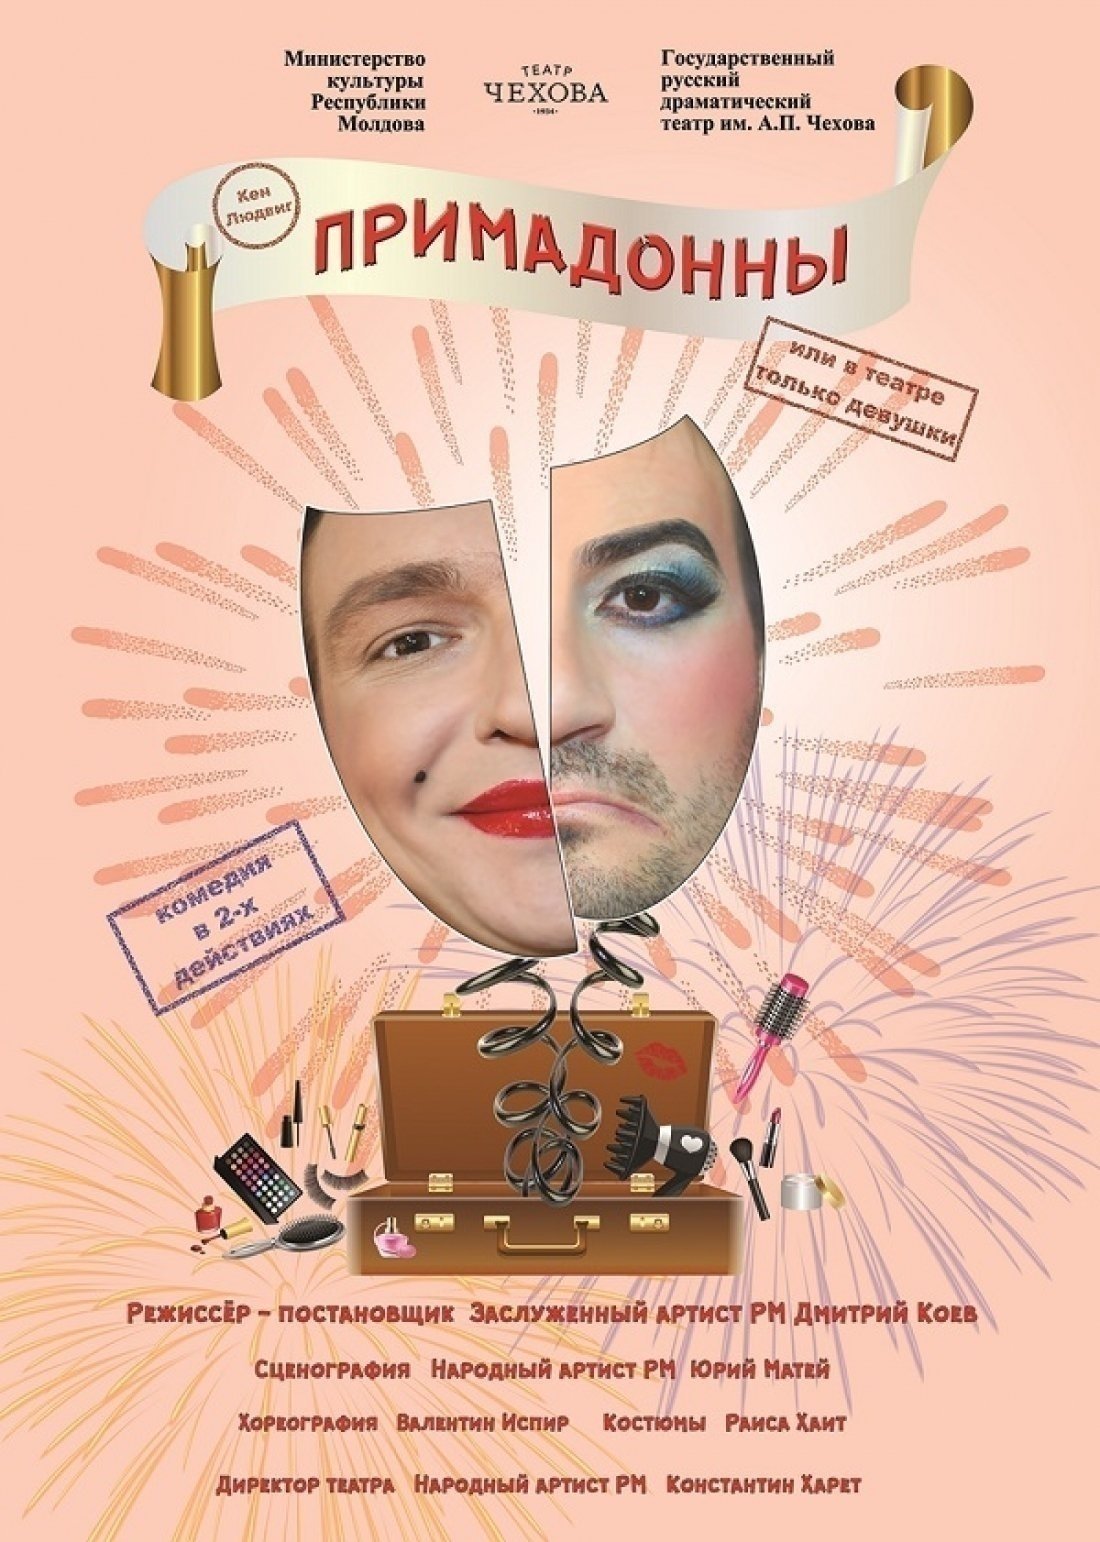 Примадонны, или в театре только девушки - februarie 2020